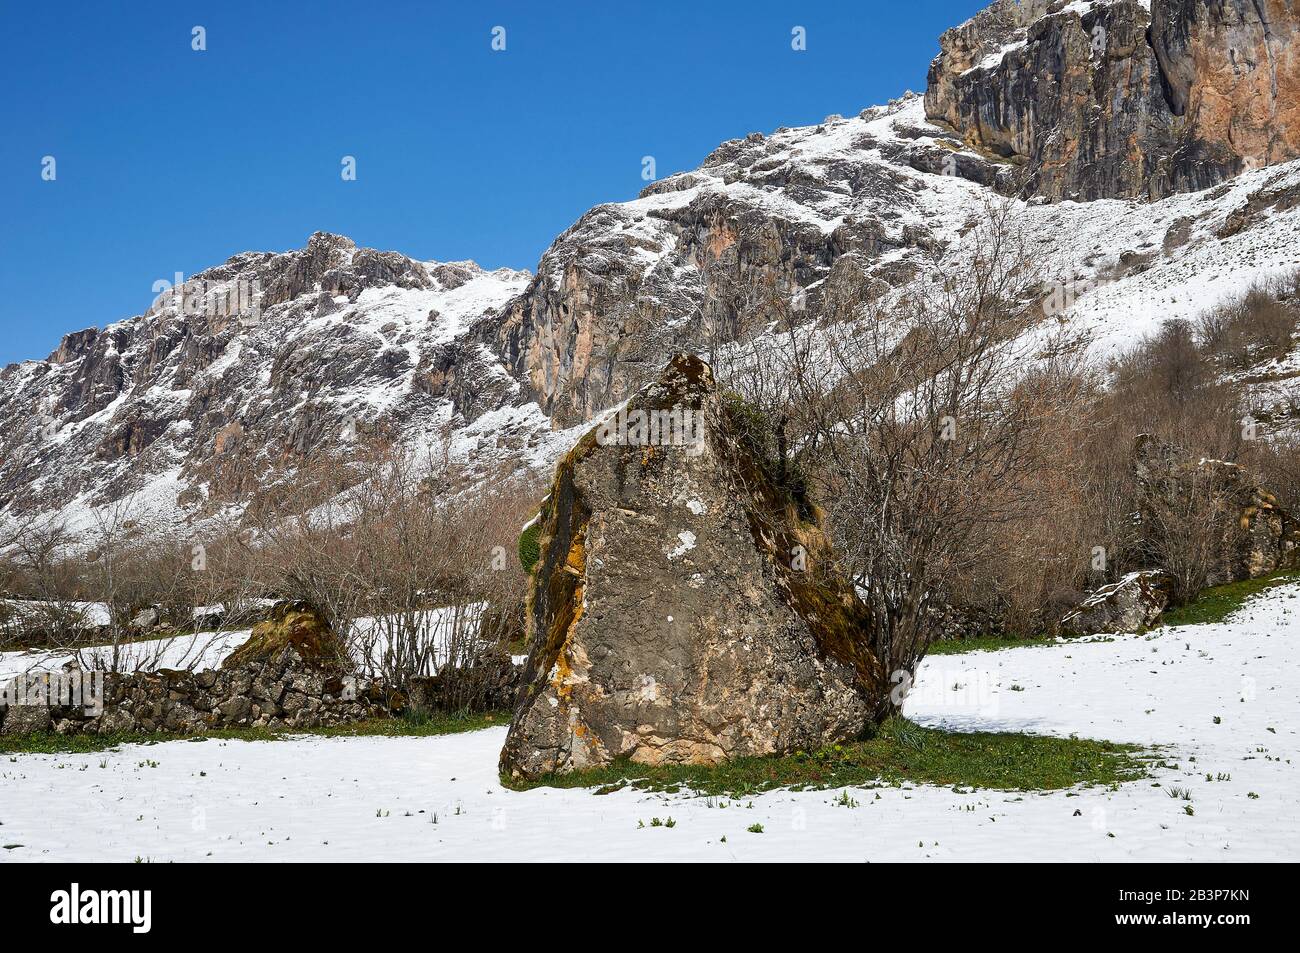 Big rock dans un champ enneigé dans le PR.AS-15 sentier de randonnée avec des montagnes enneigées en arrière-plan (Valle del Lago, Somiedo Natural Park, Asturies, Espagne) Banque D'Images